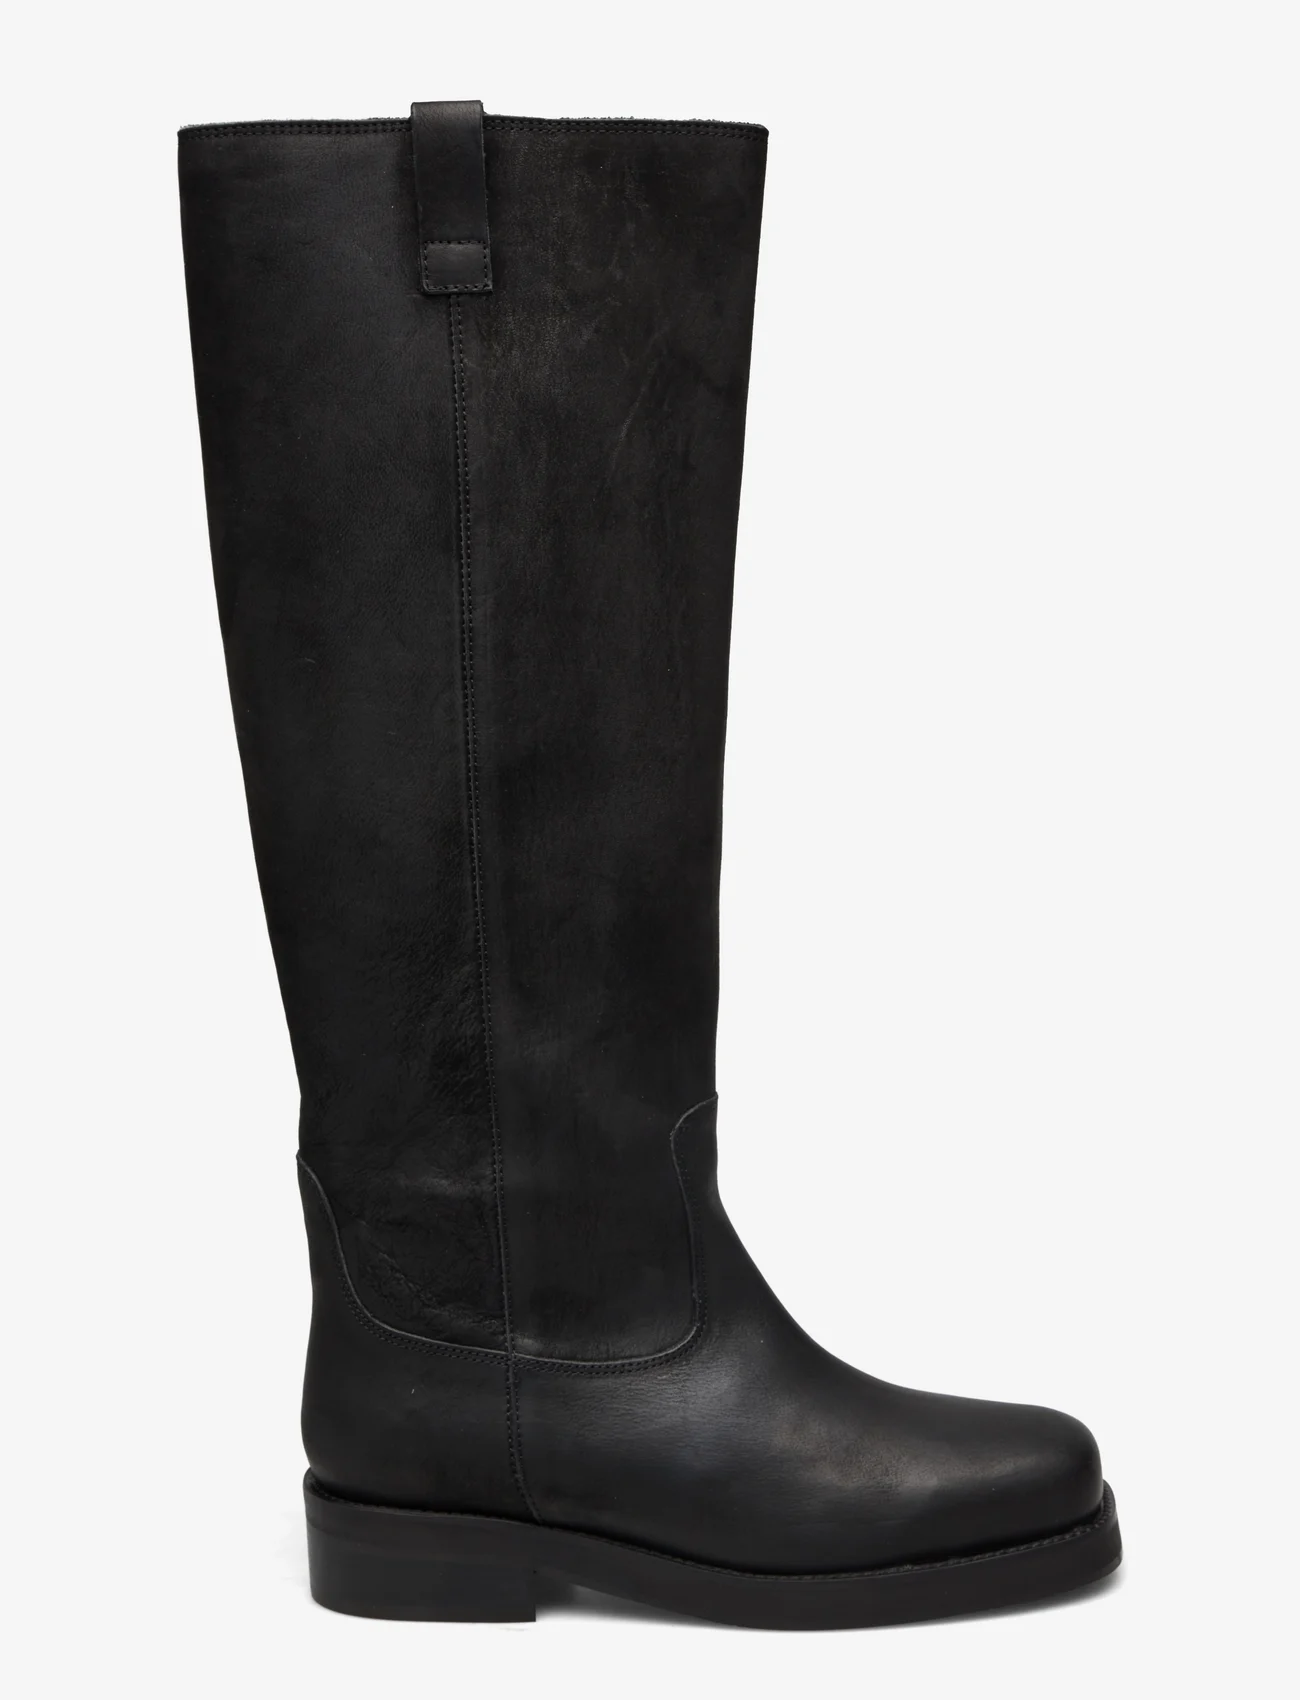 Billi Bi - Long Boots - kniehohe stiefel - black nubuk - 1